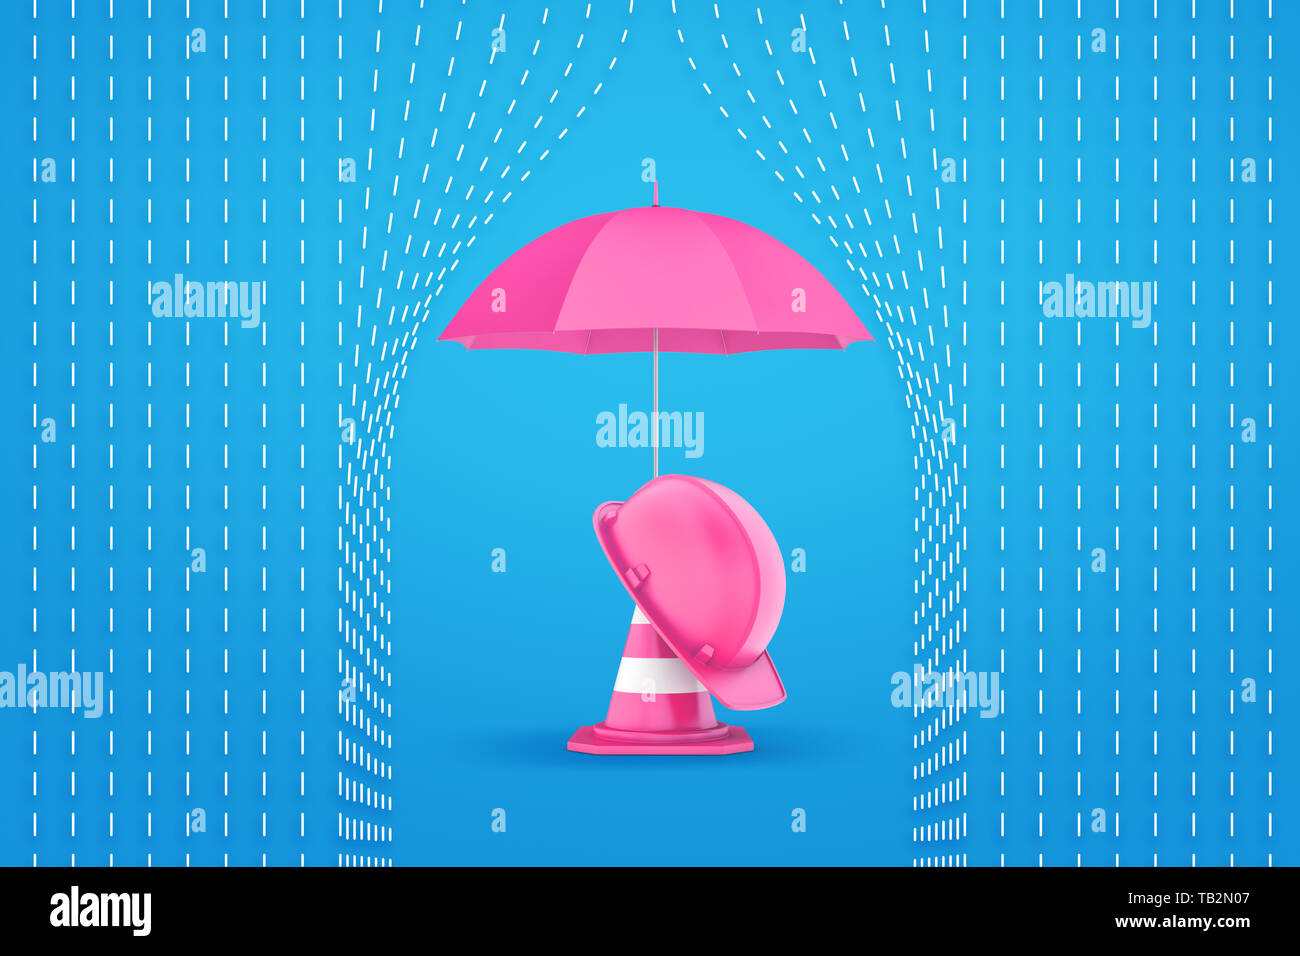 3D-Rendering von Pink not Kegel mit rosa Helm und rosa Regenschirm auf blau gestrichelte Linie regen Hintergrund Stockfoto